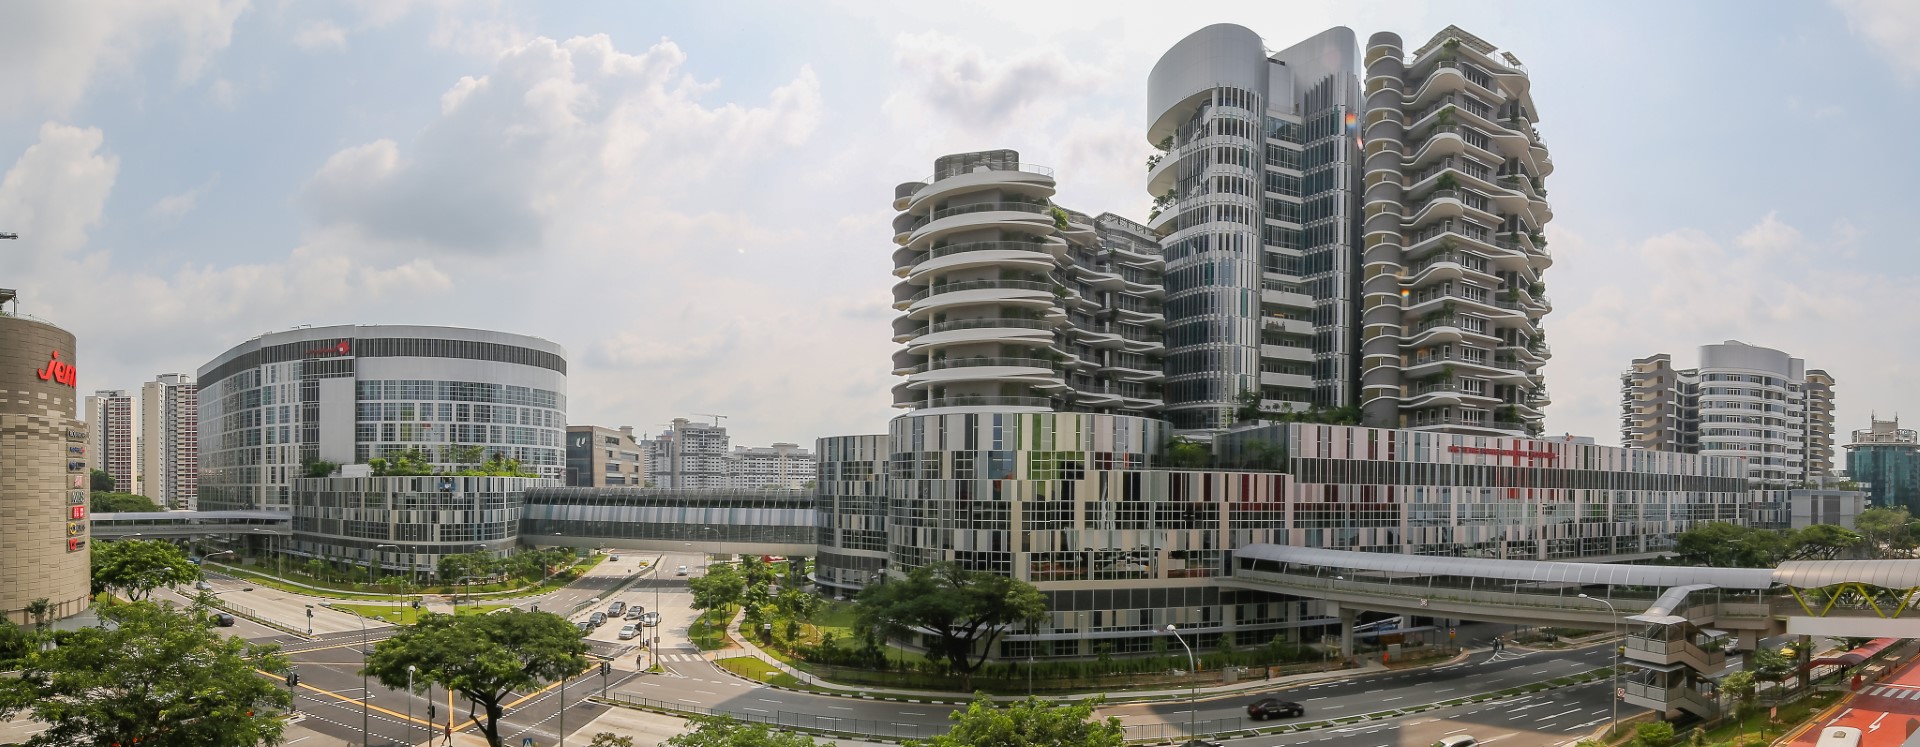 Panoramic View, Ng Teng Fong Hospital and Jurong Community Hospital, Singapore